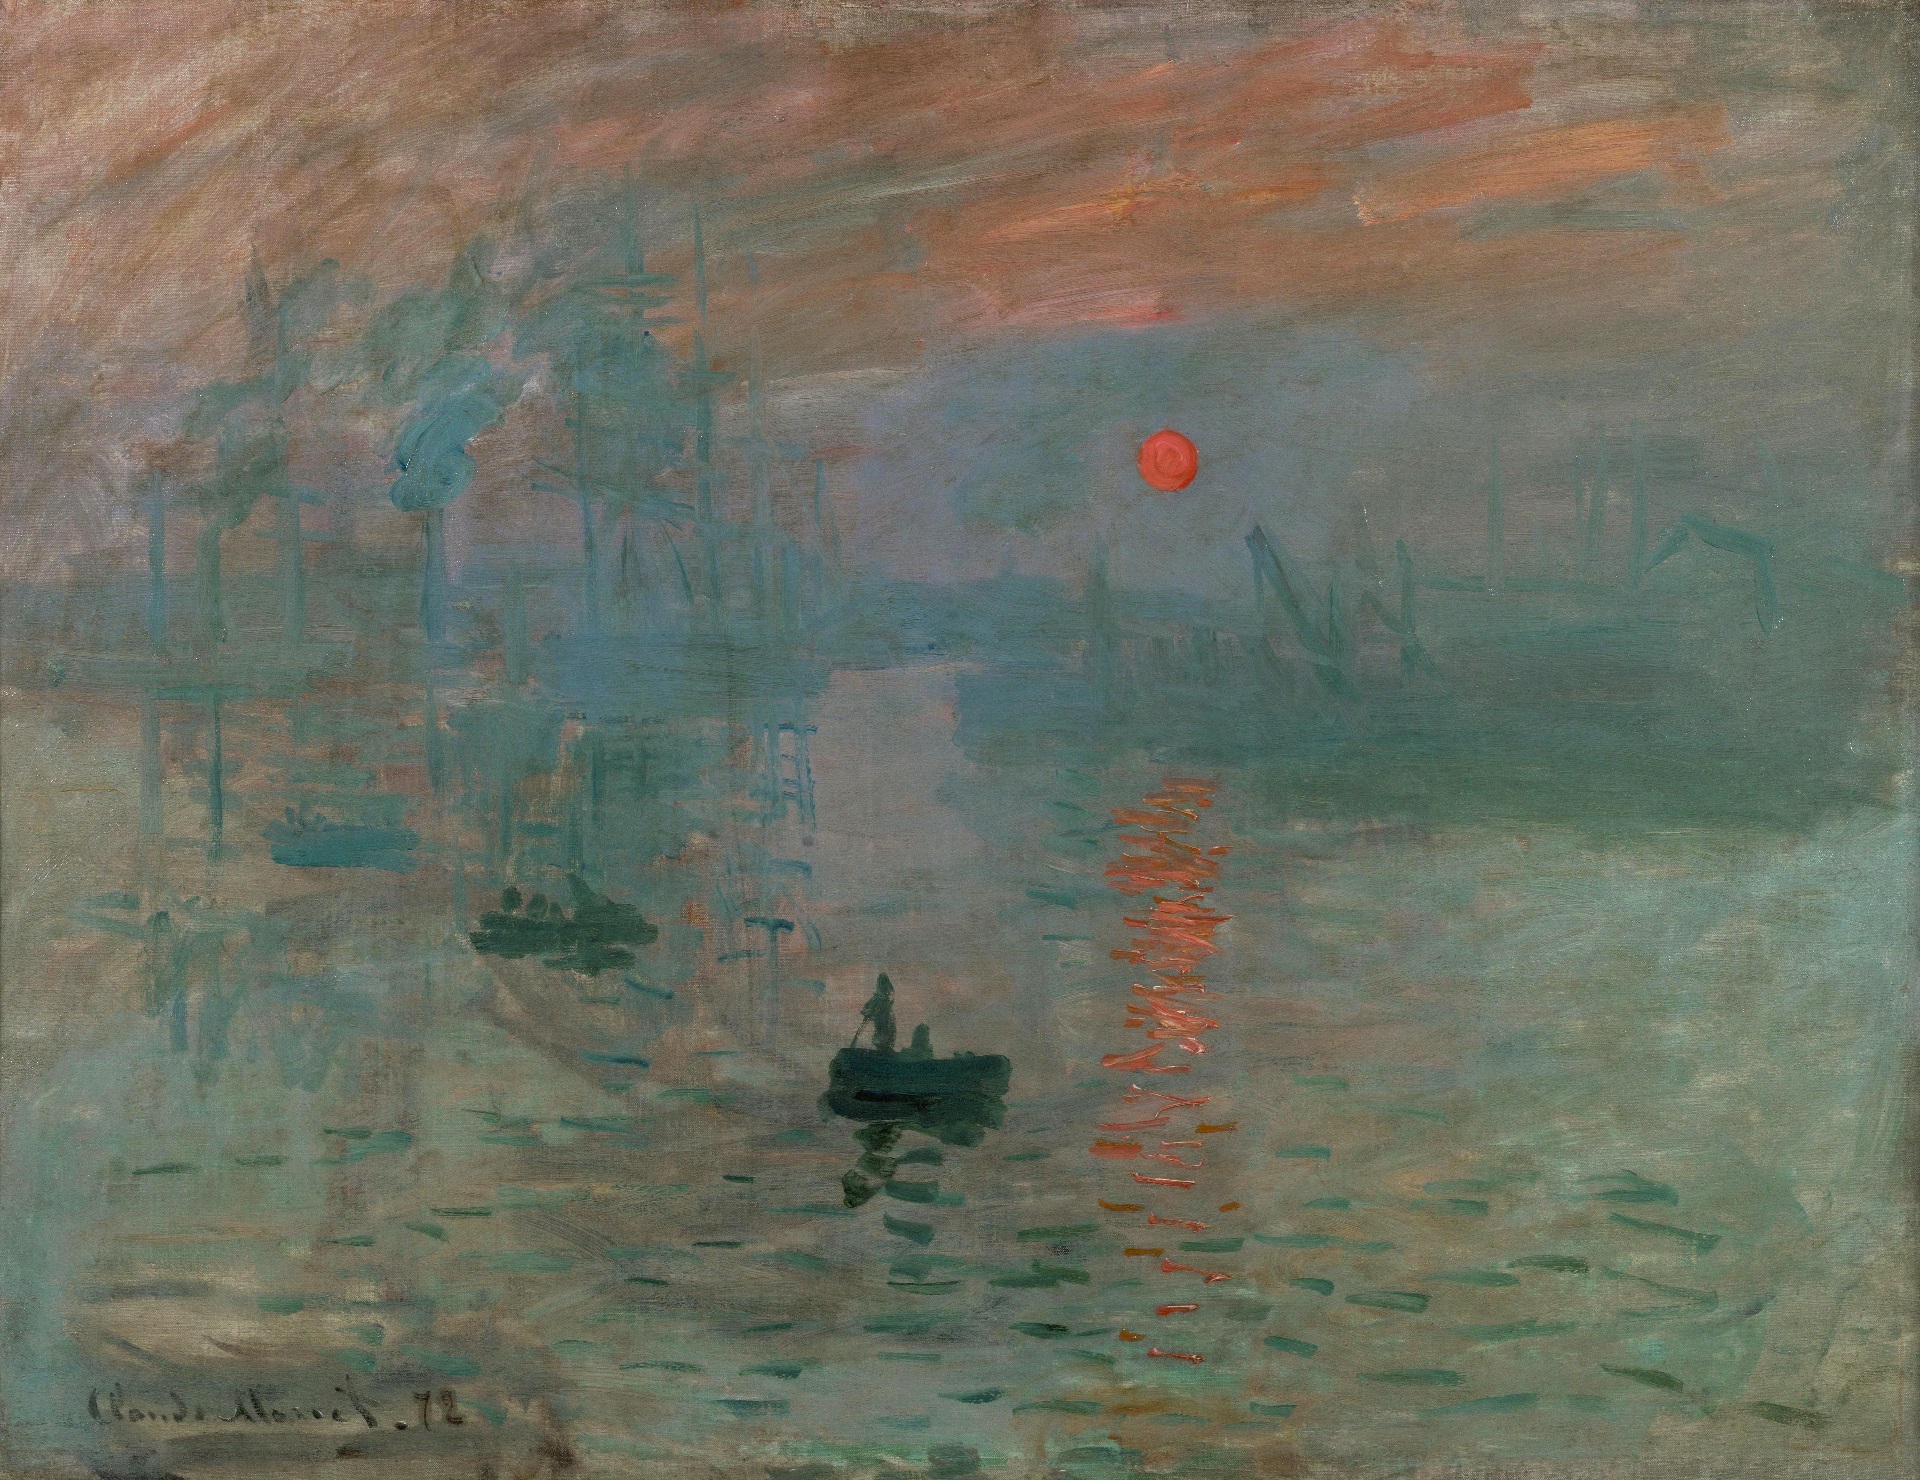 "Impresión, sol naciente", de Claude Monet